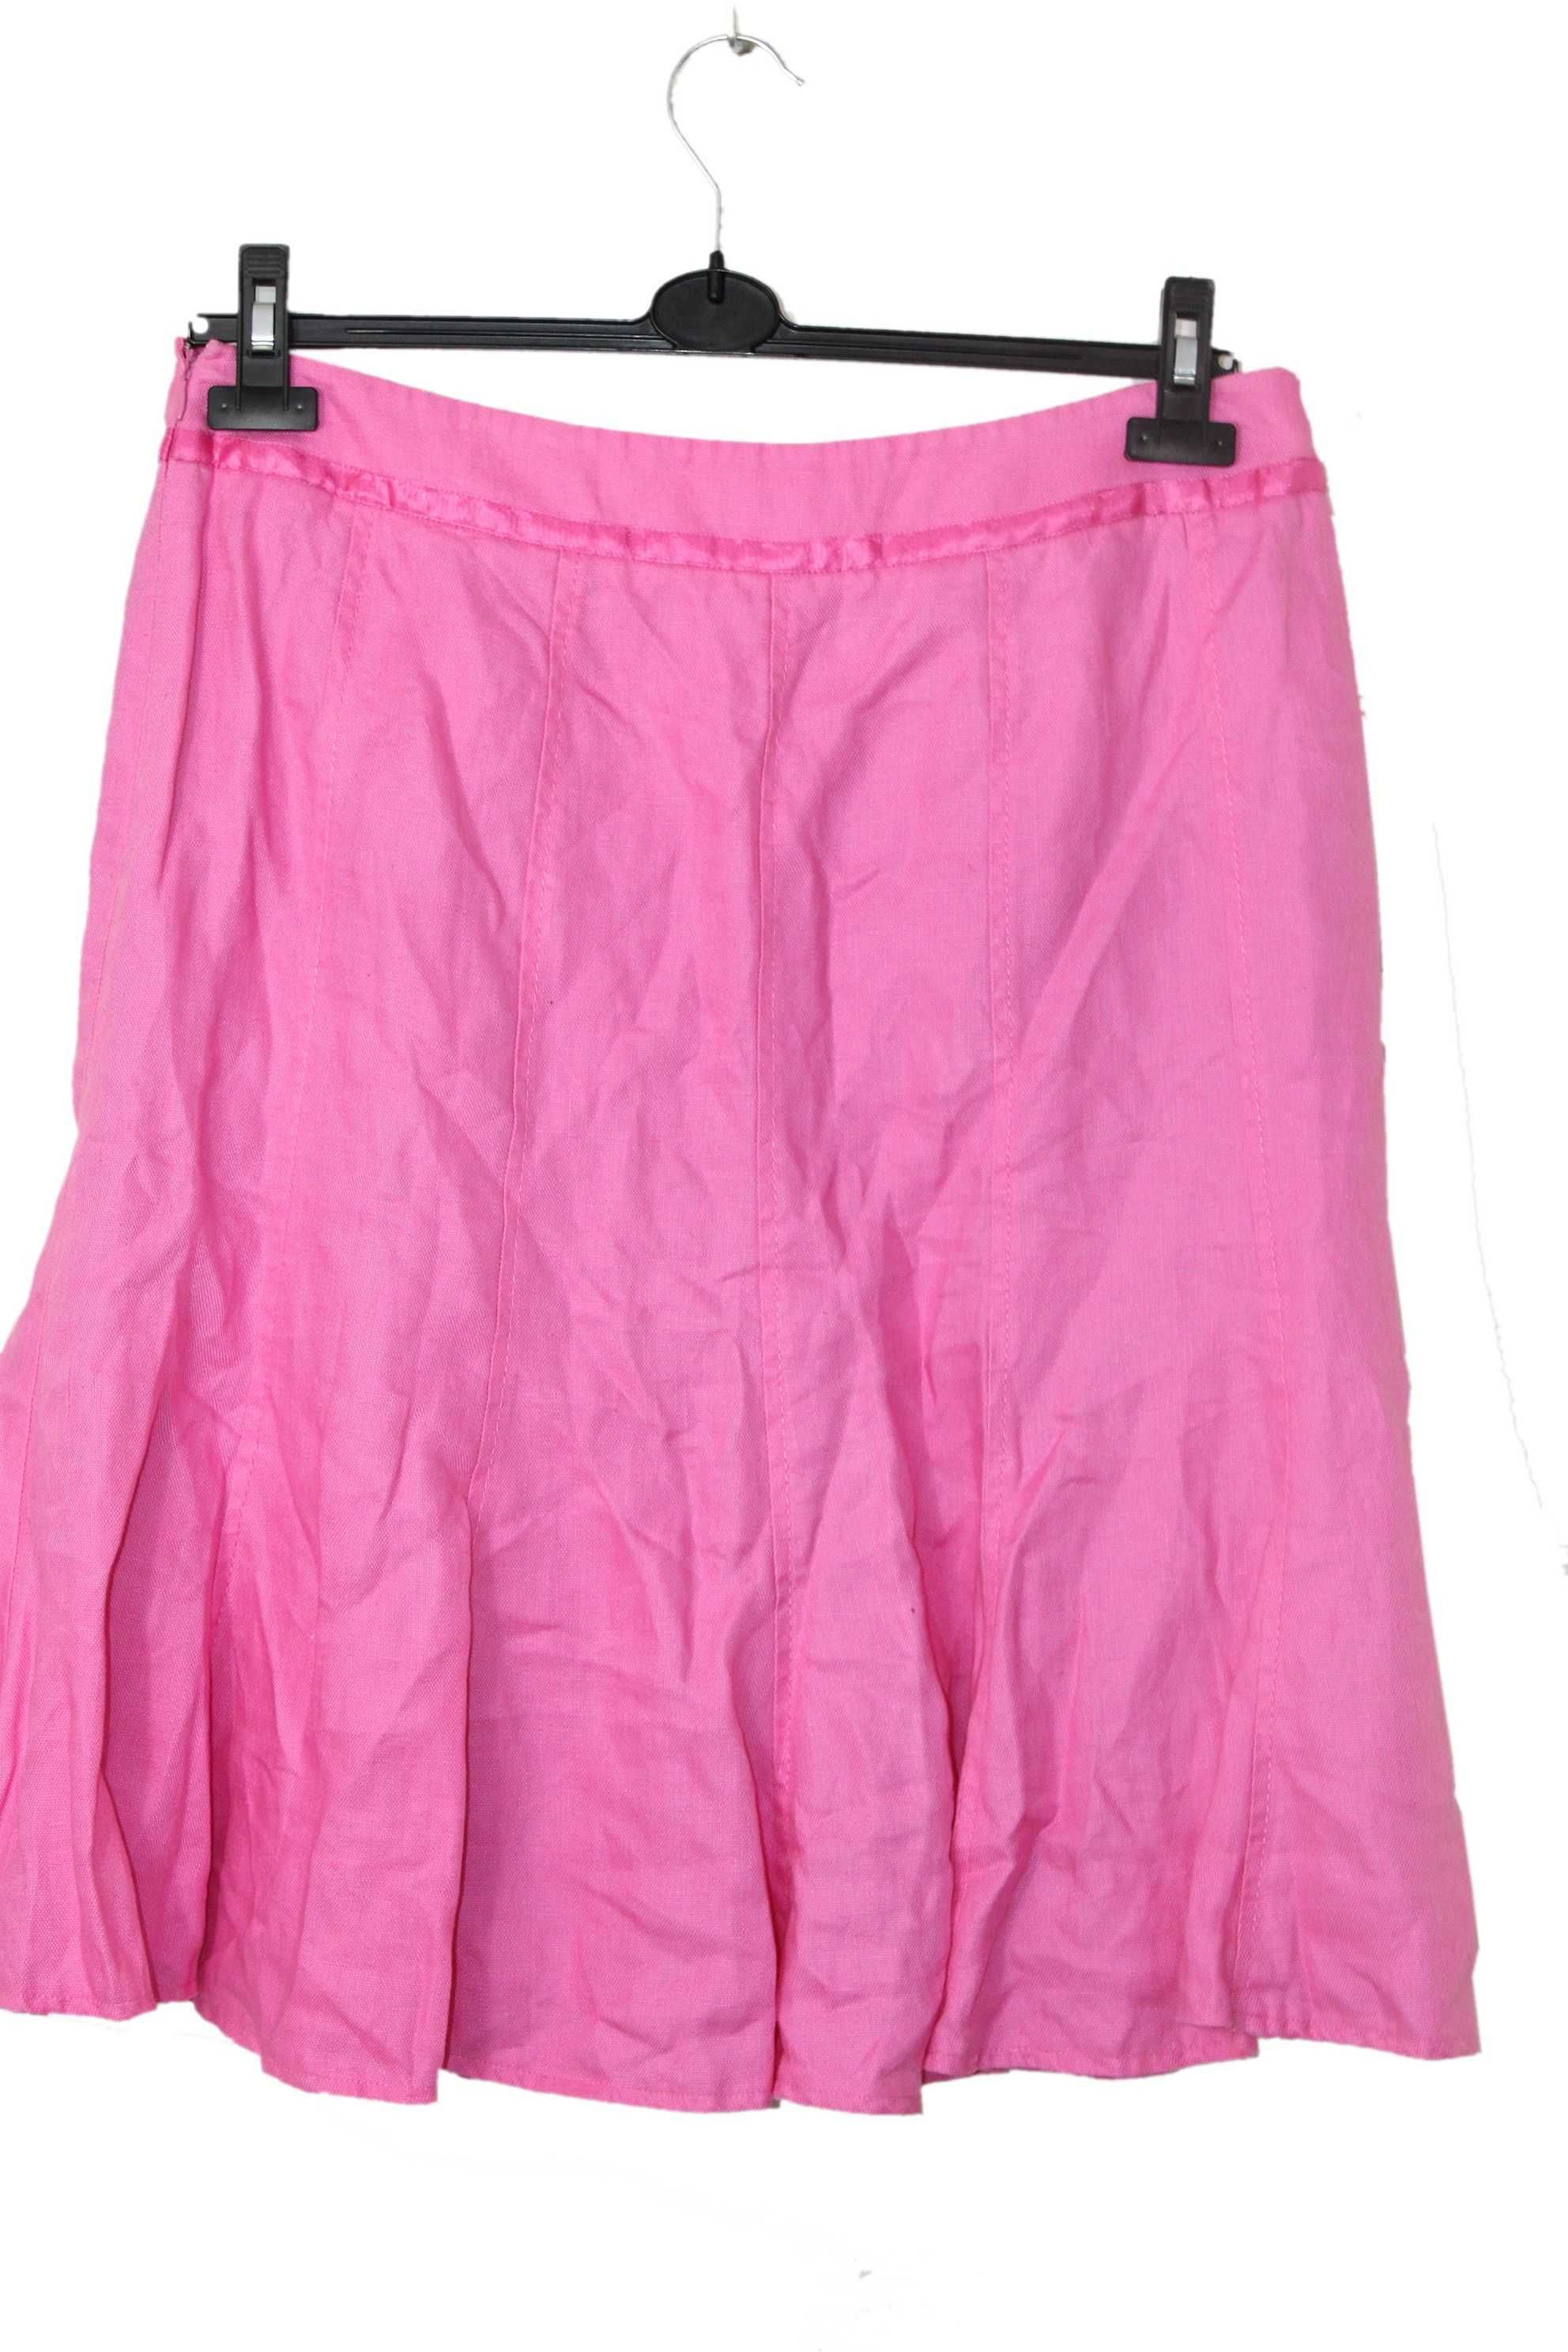 y1 PRECIS PETITE Stylowa Lniana Różowa Spódnica Len 42 XL